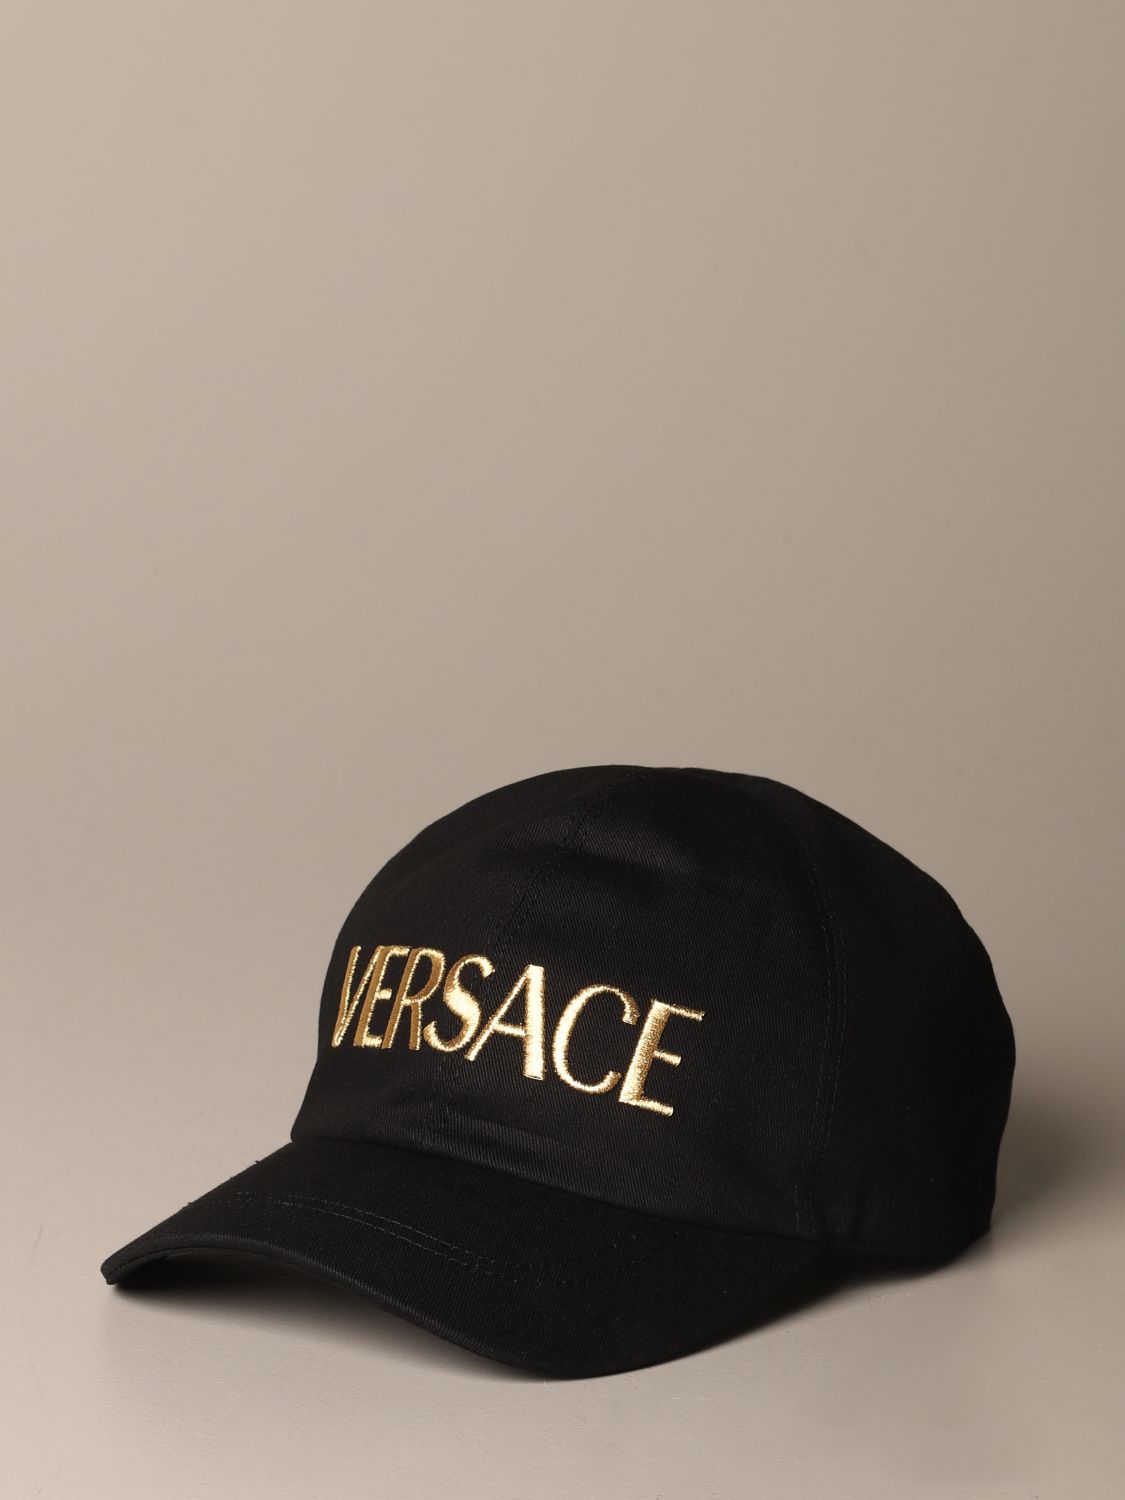 versace mens hat